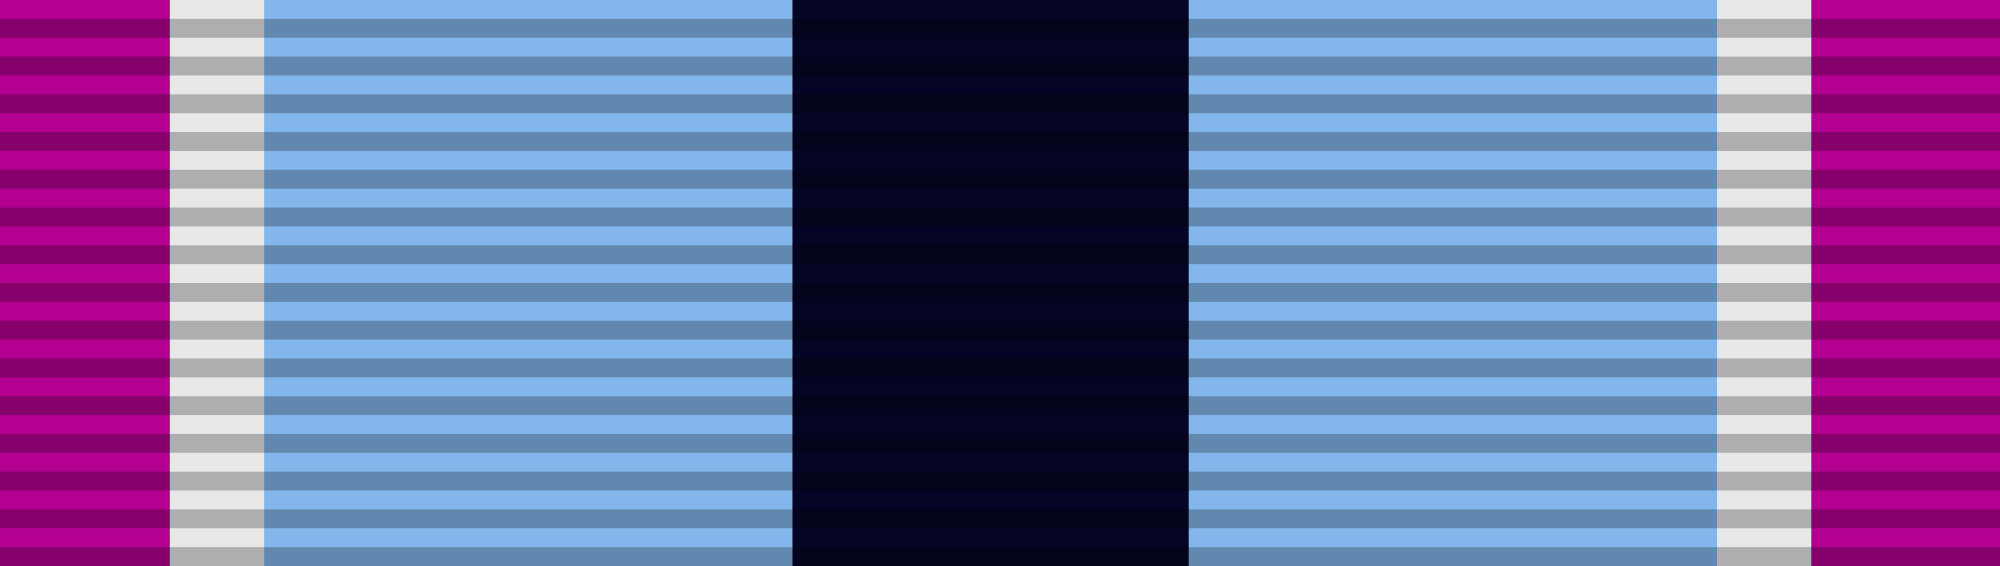 Humanitarian_Service_Medal_ribbon